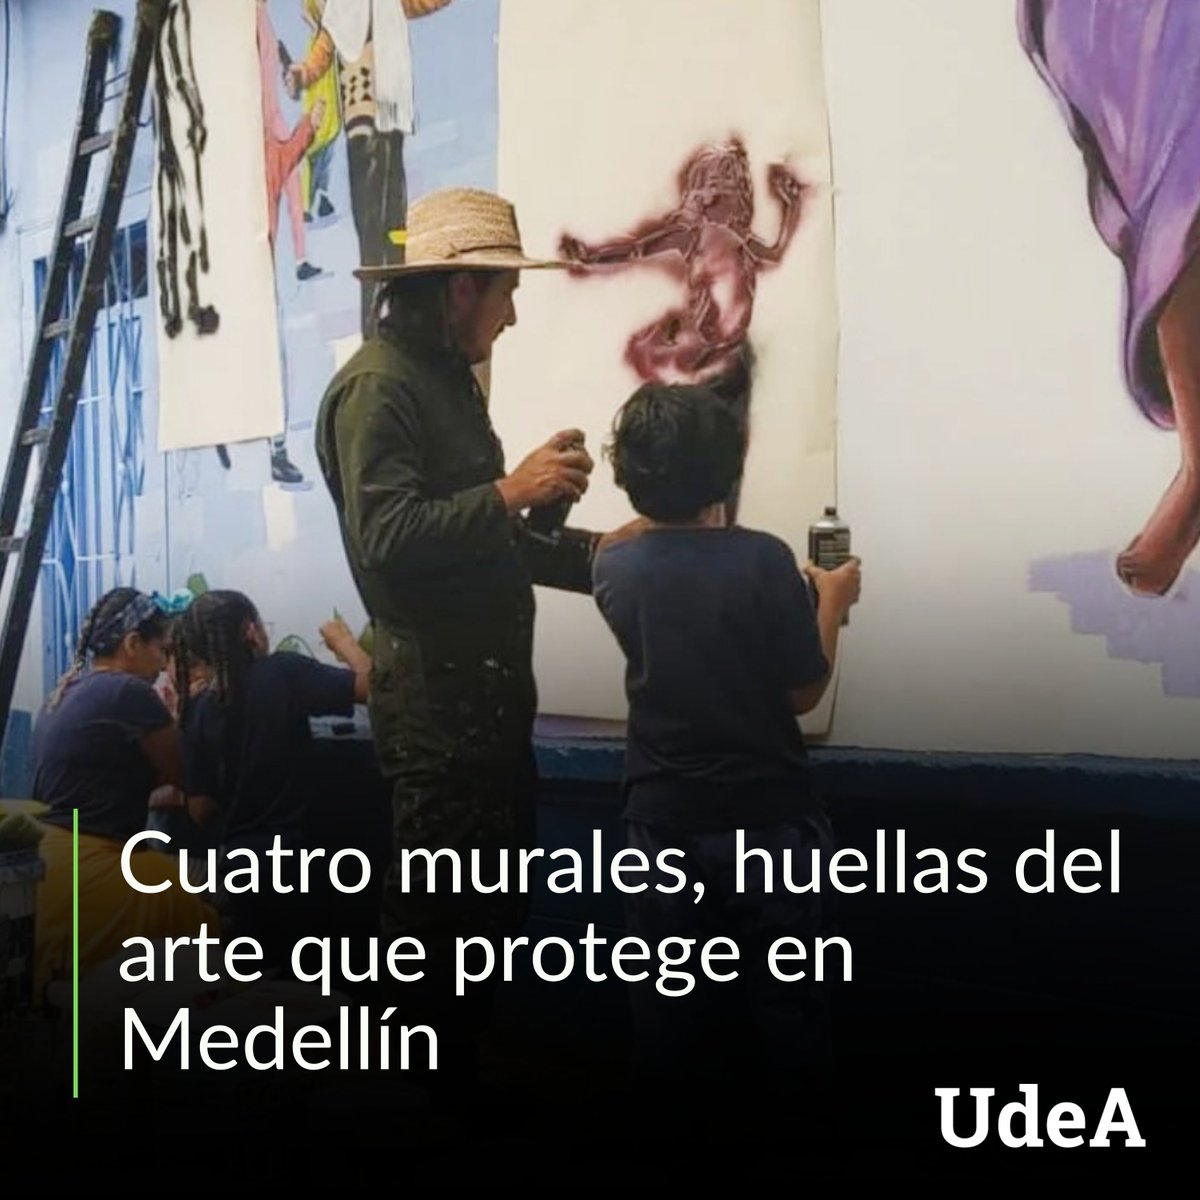 🥰 «Arte que protege», un proyecto que analiza el papel de las iniciativas artísticas y culturales desarrolladas por organizaciones de #Medellín y que son huellas de resistencia en lugares afectados por el conflicto urbano. 😉Detalles en #UdeANoticias 👉 bit.ly/ArProUdeA